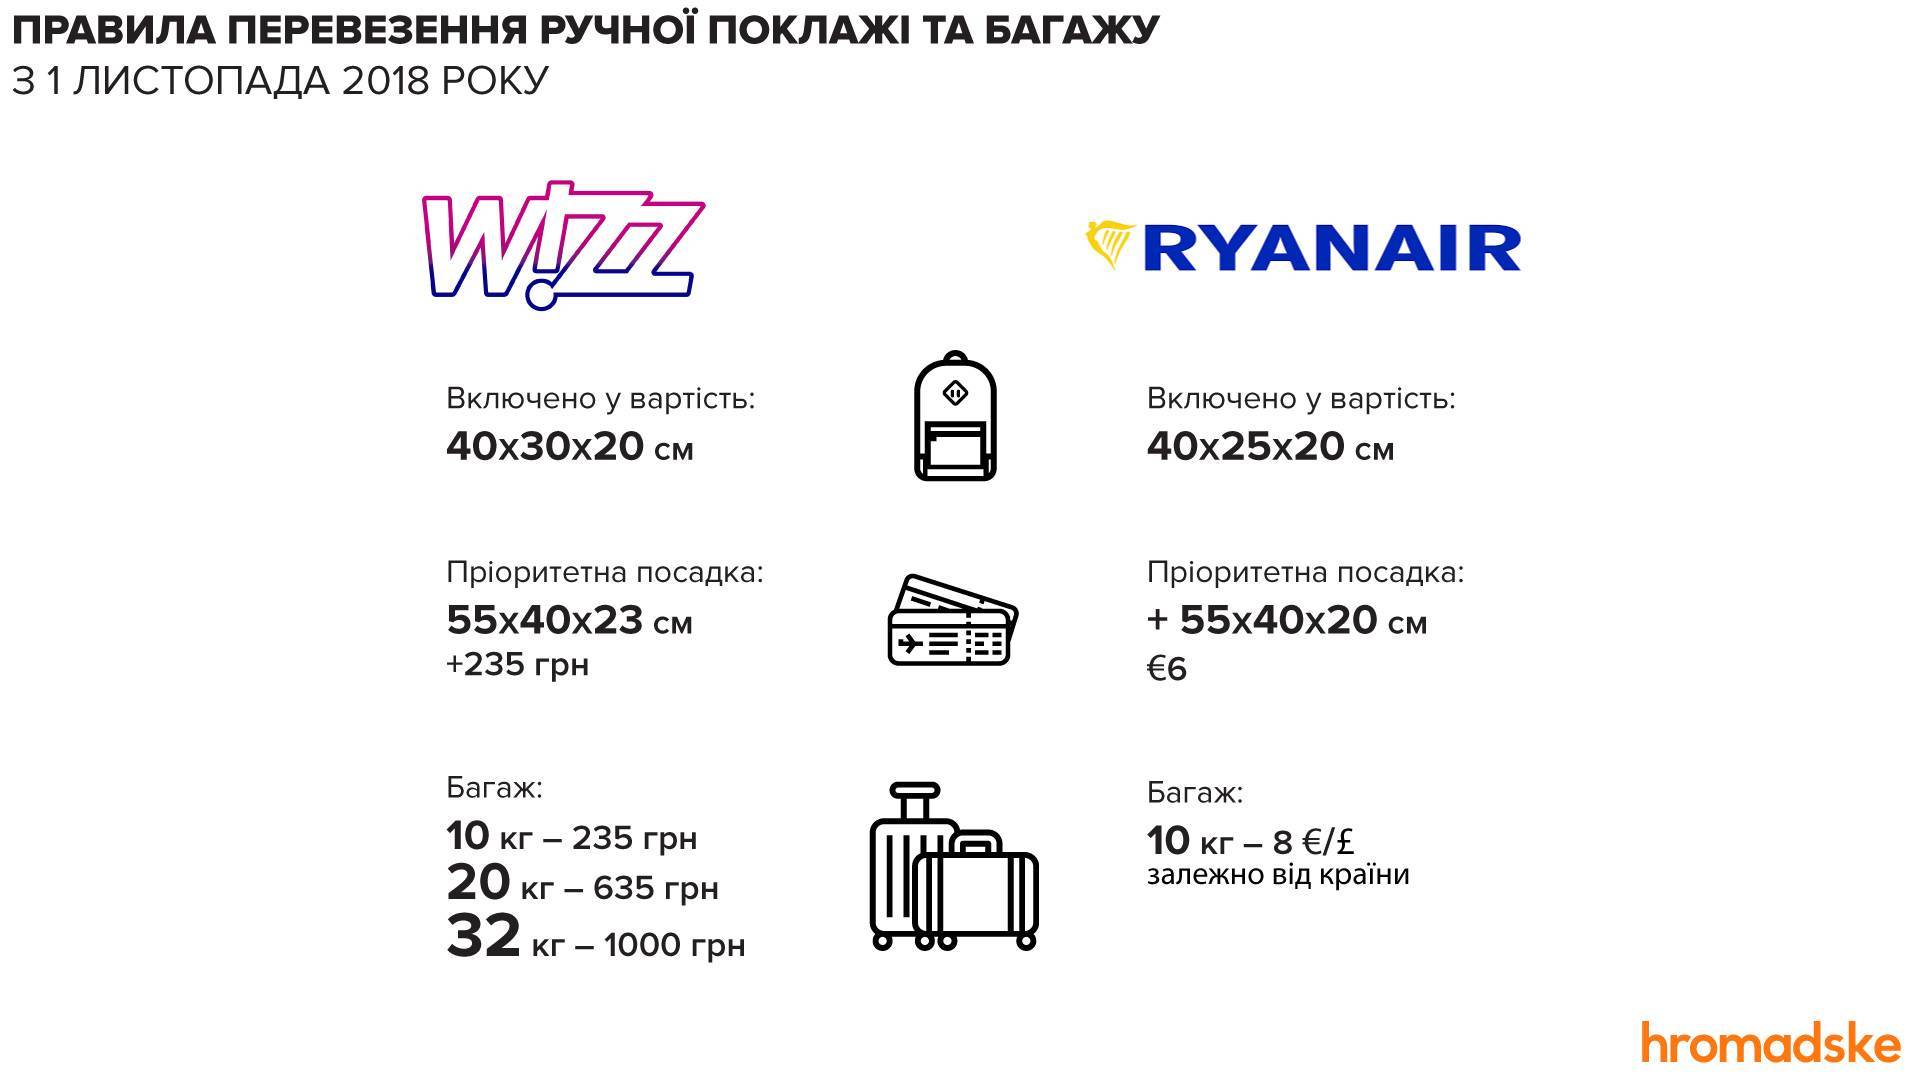 Провоз багажа ryanair - ryanair | райнэйр на русском